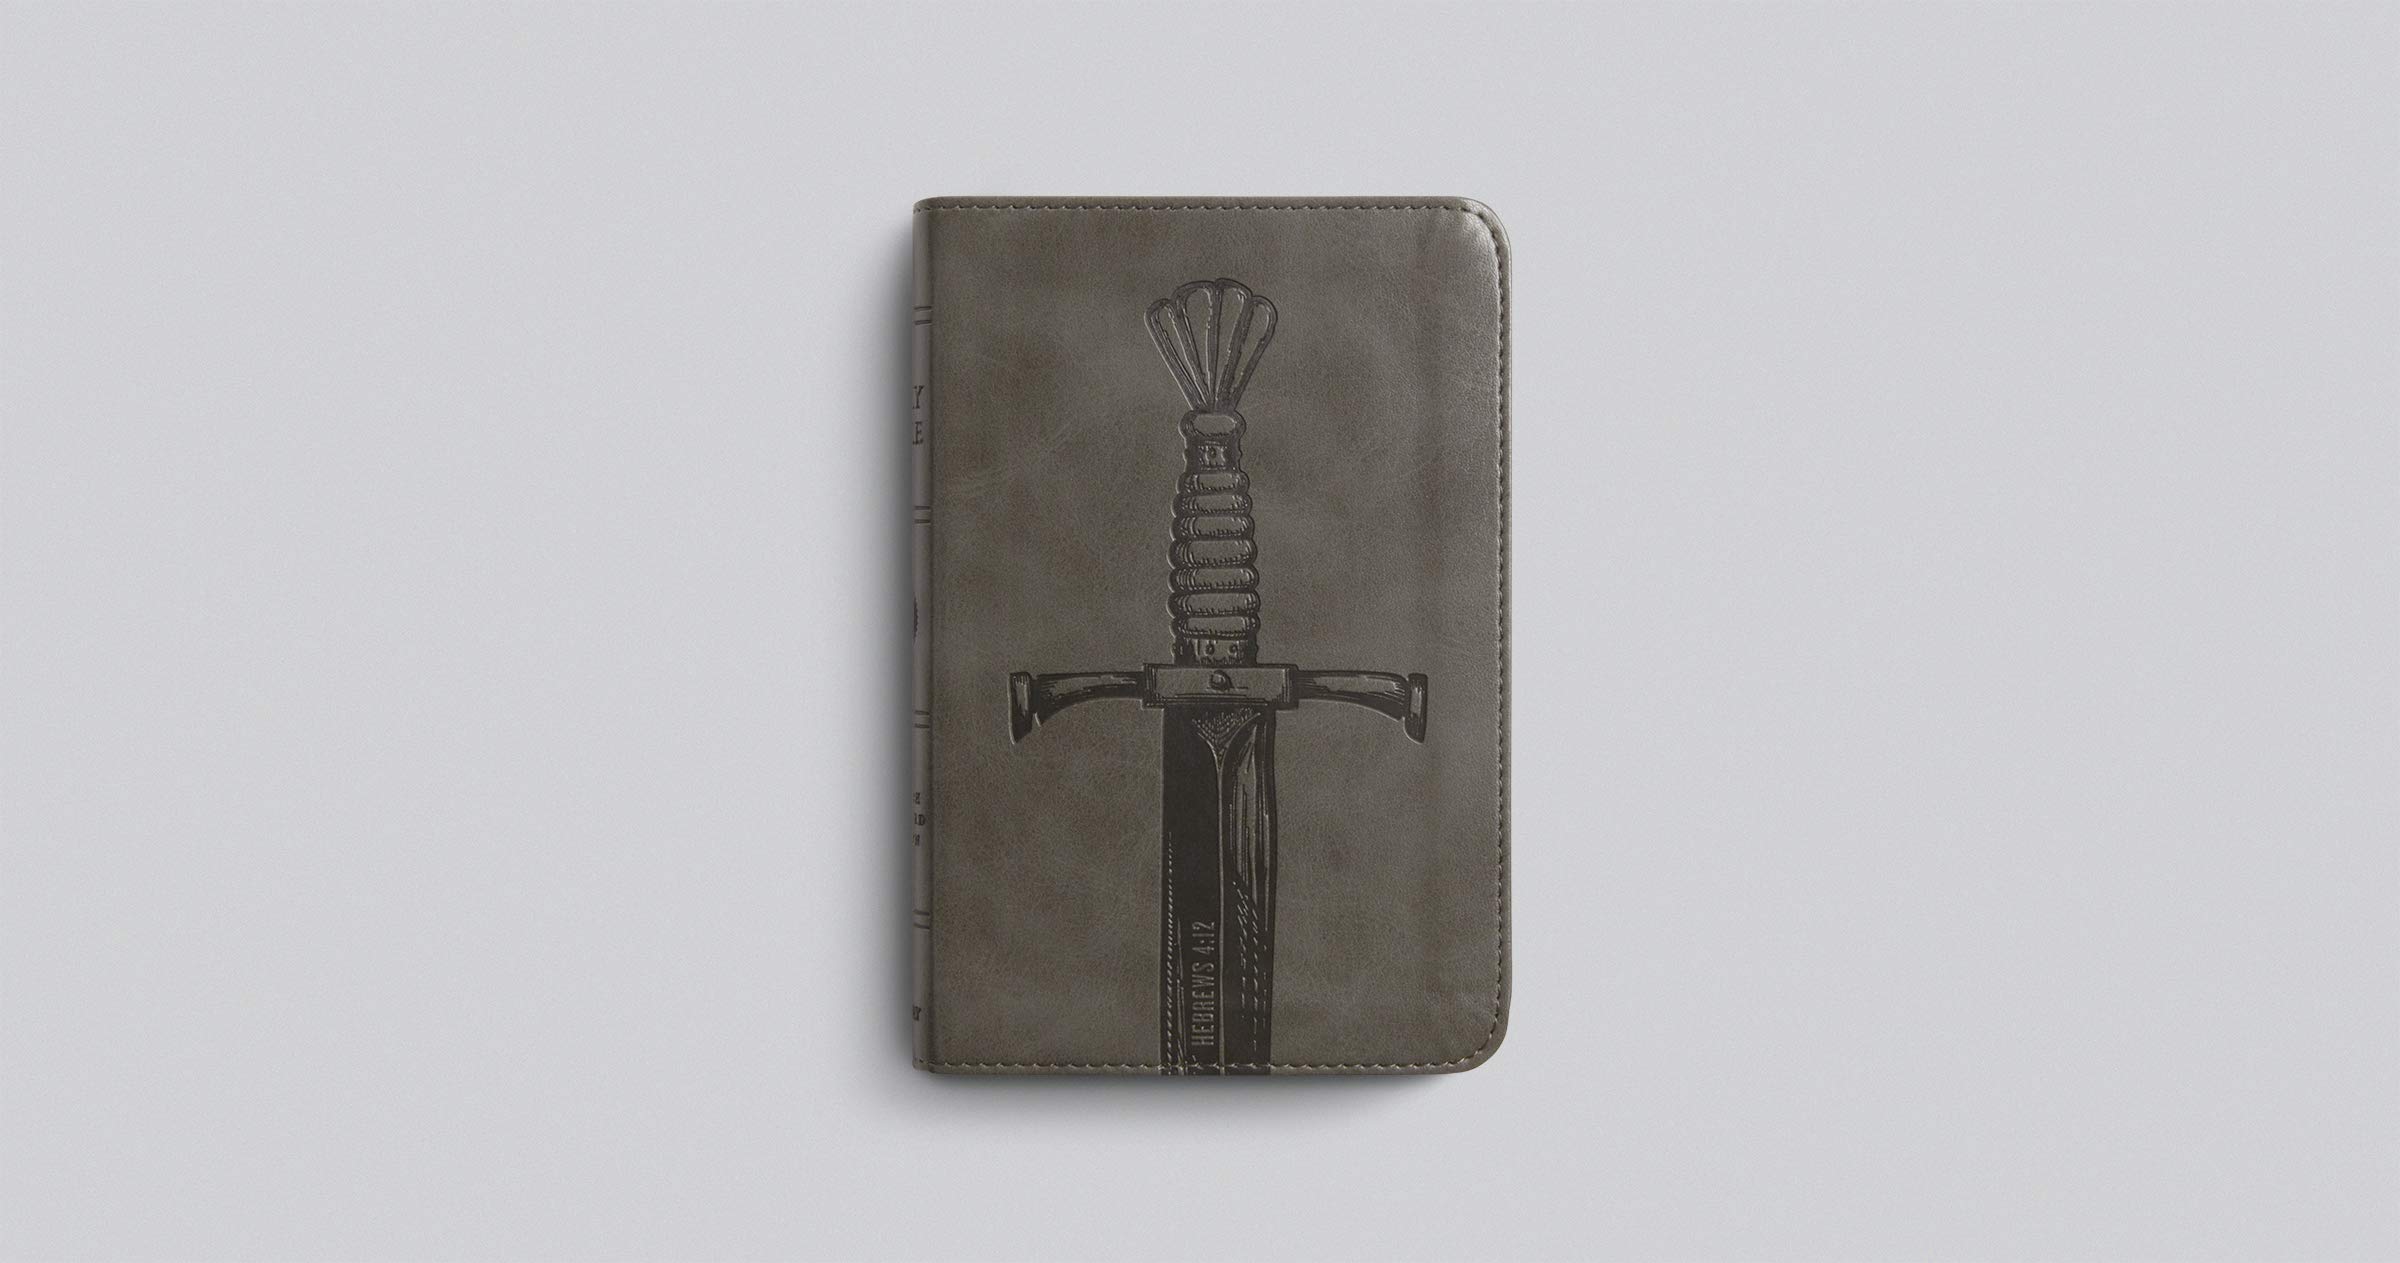 ESV Compact Bible (TruTone, Silver, Sword Design)